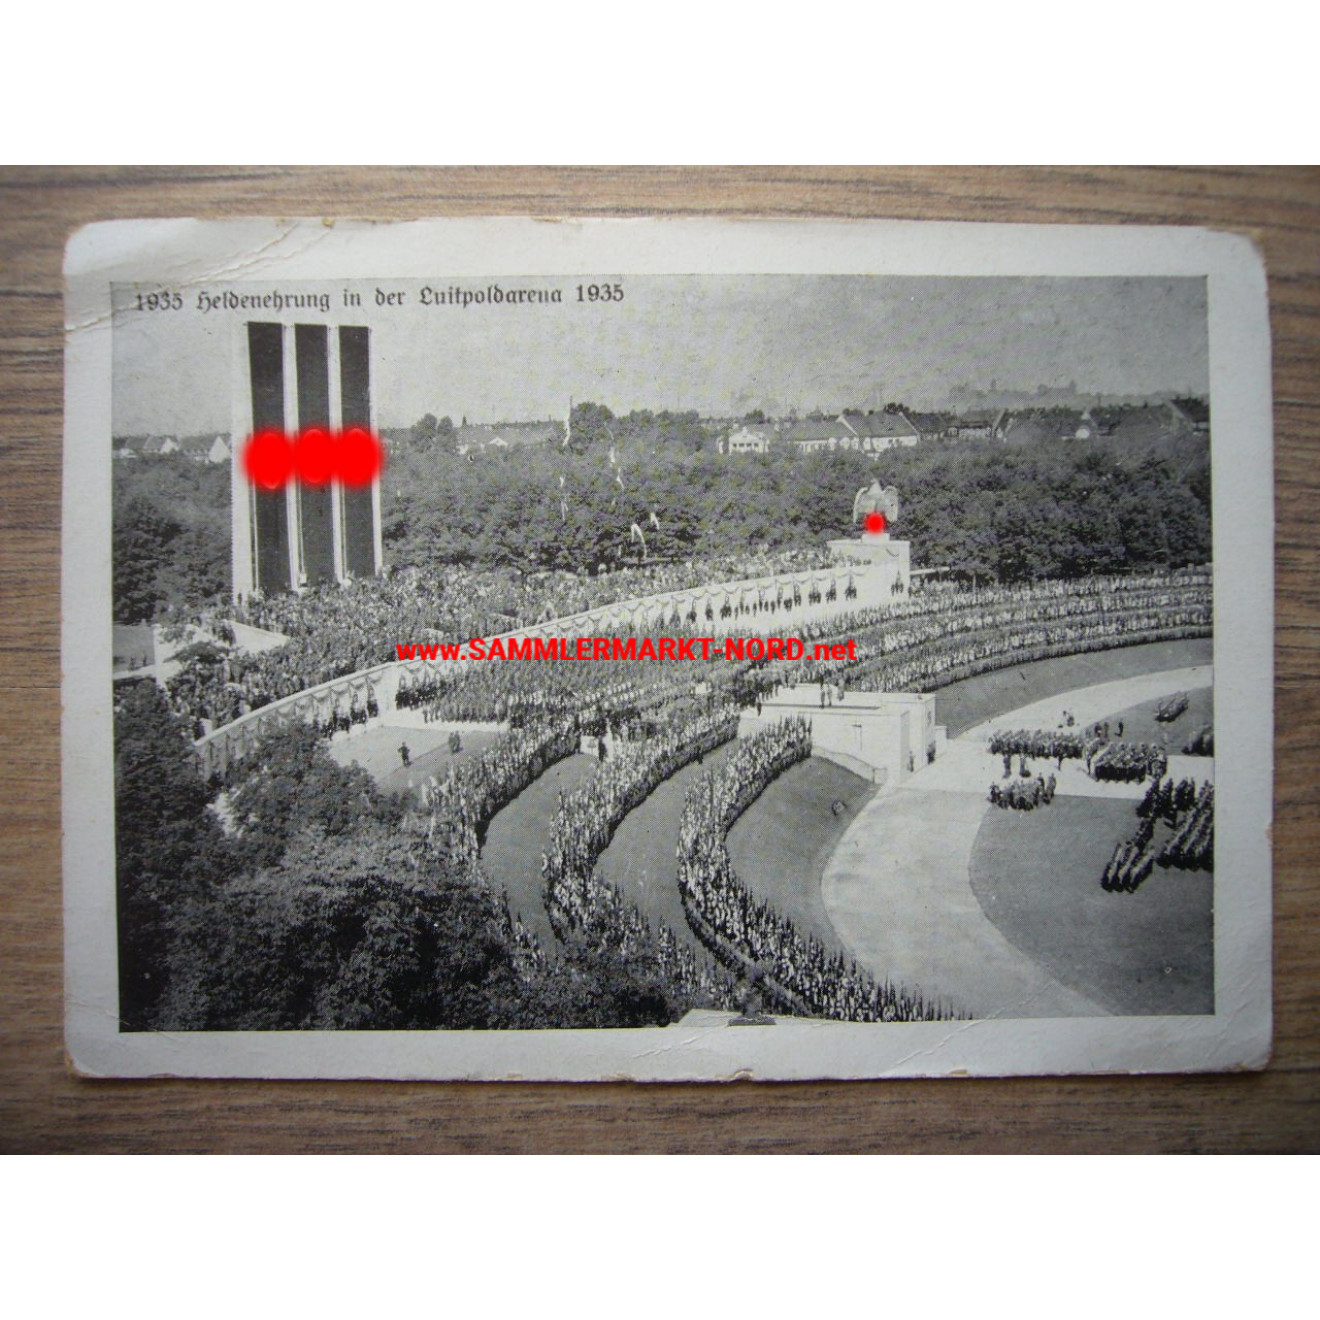 Nuremberg - heroes honored in the Luitpold arena 1938 - postcard